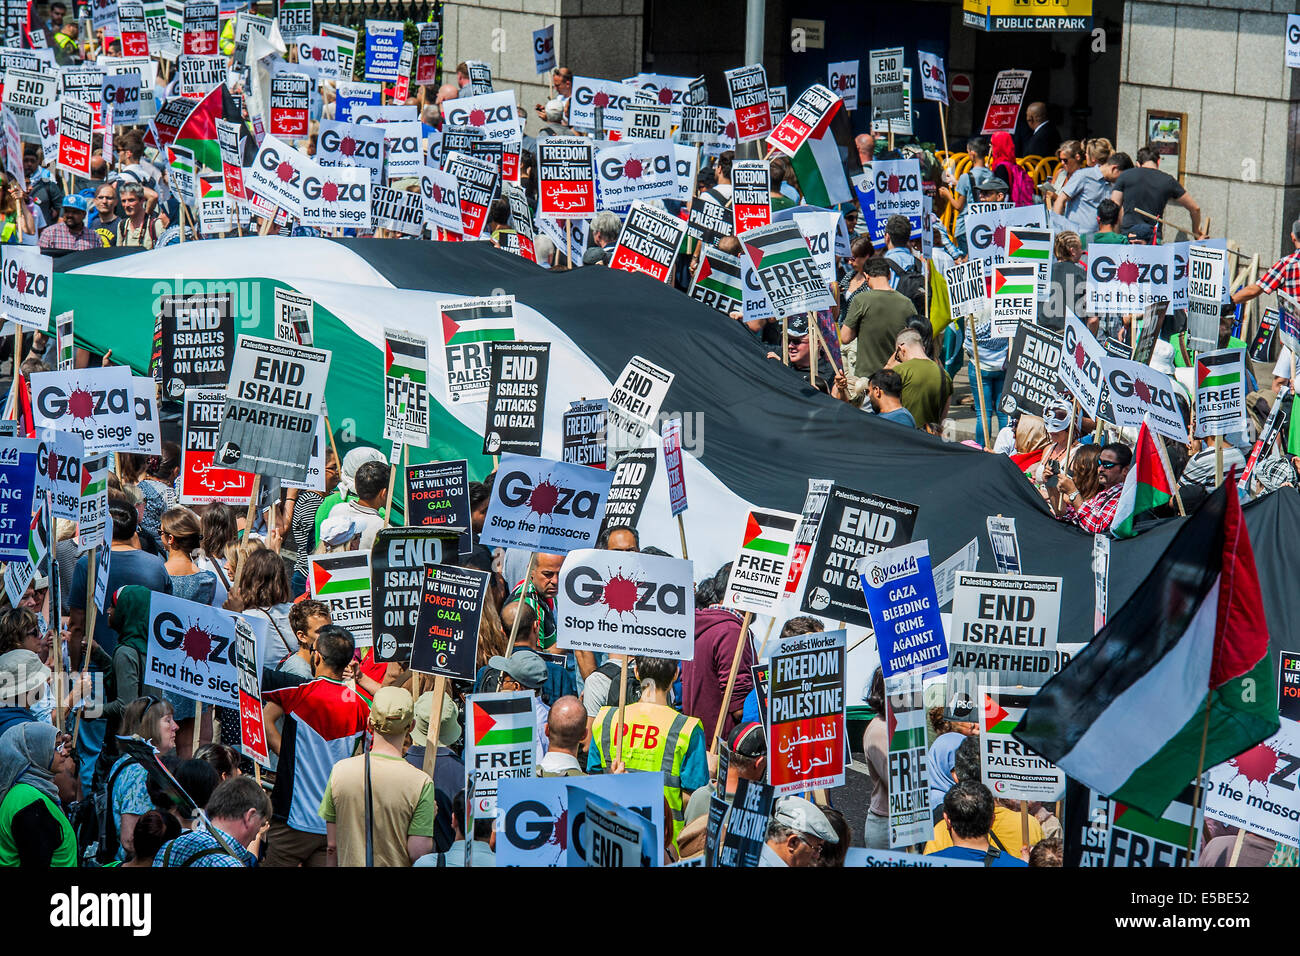 Londres, Royaume-Uni. 26 juillet, 2014. Arrêter le massacre à Gaza" de protestation. Une manifestation appelée par : Coalition contre la guerre, la Solidarité Palestine campagne, Campagne pour le désarmement nucléaire, les Amis de Al Aqsa, British Muslim Initiative, Association des musulmans de Grande-Bretagne, le Forum palestinien en Grande-Bretagne. Ils ont réuni à l'ambassade d'Israël et ont marché vers le Parlement. Ils ont appelé à "l'attentat d'Israël et l'assassinat d'arrêter maintenant et pour David Cameron à cesser de soutenir les crimes de guerre israéliens'. Londres, 26 juillet 2014. Crédit : Guy Bell/Alamy Live News Banque D'Images